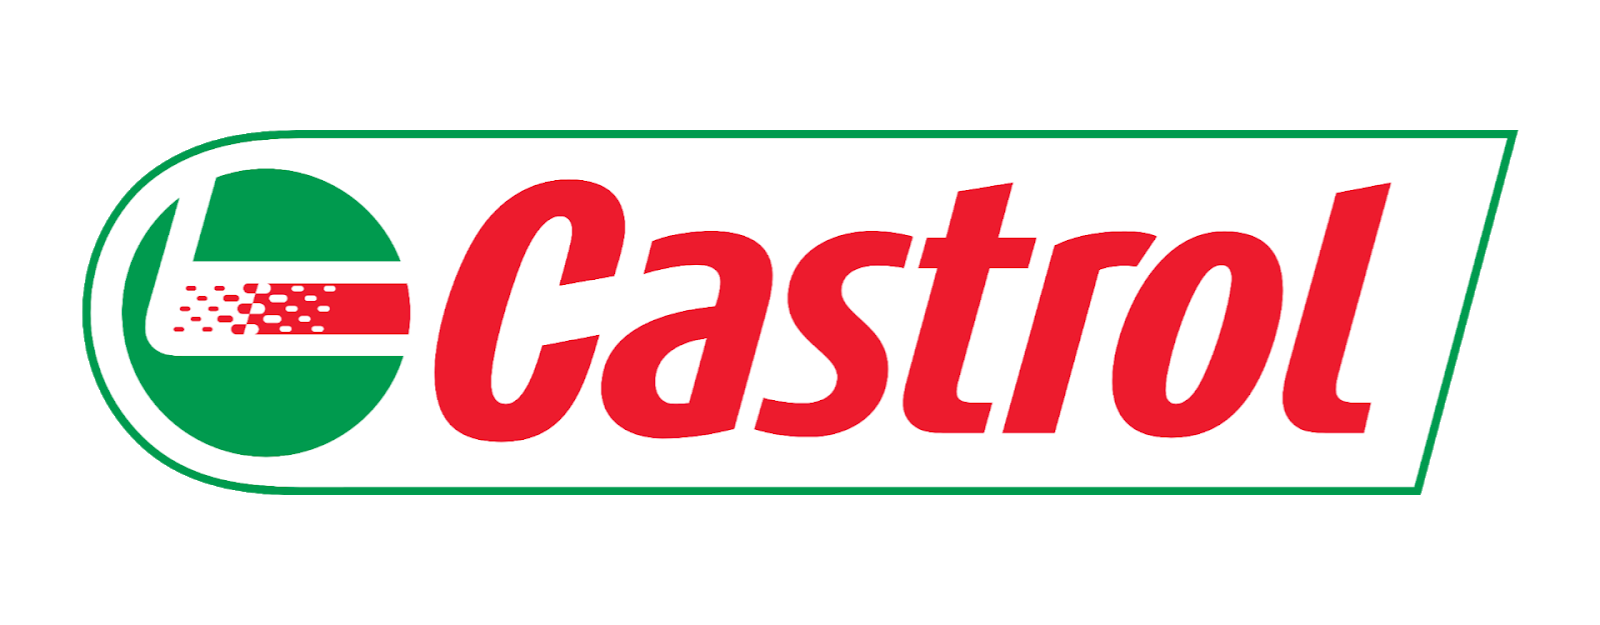 Logo Castrol Format PNG